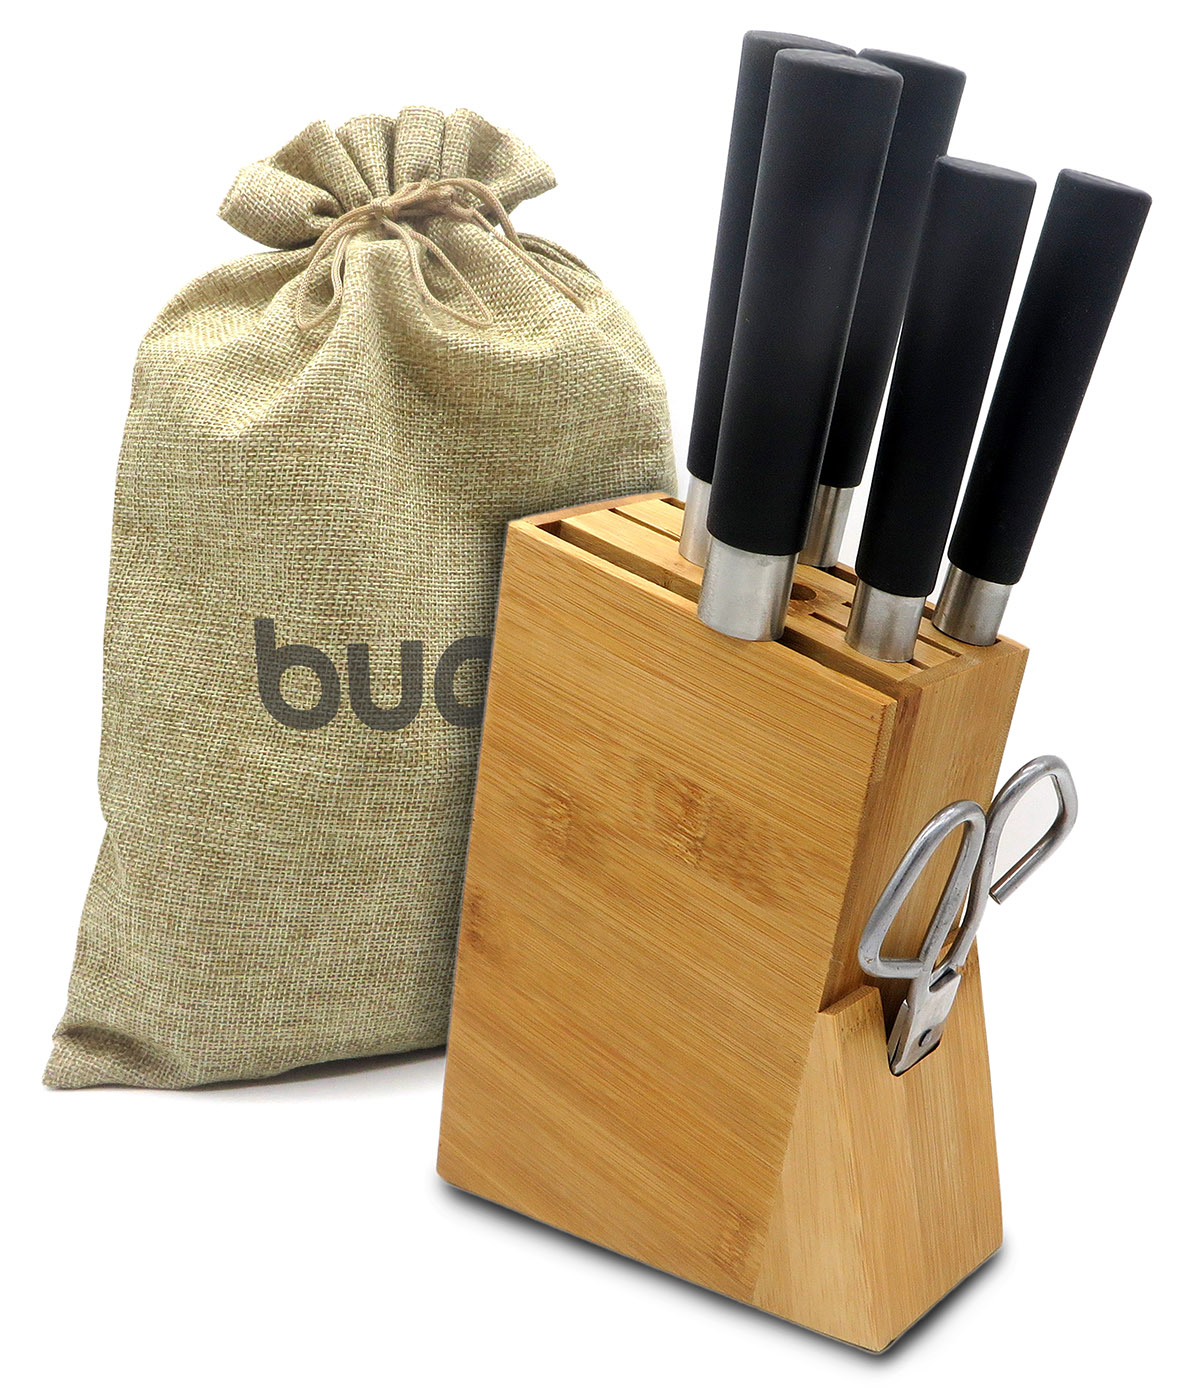 Homemaid Living En bloque de cuchillos de bambú, tiene capacidad para 16  cuchillos + ranura para afilador de cuchillos, organizador de cuchillos  para